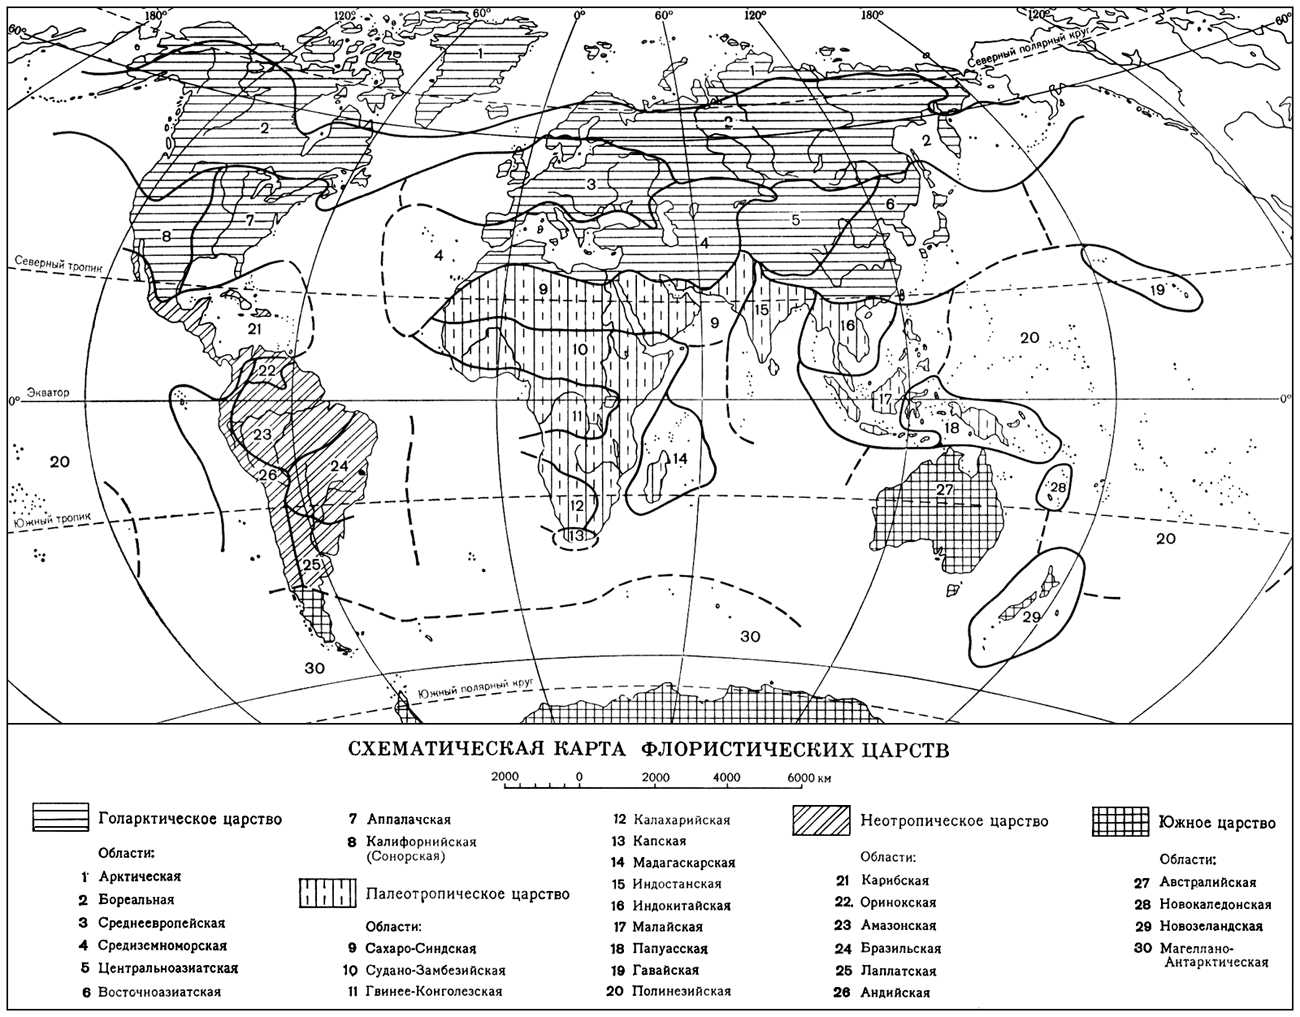 Флористические царства (карта)